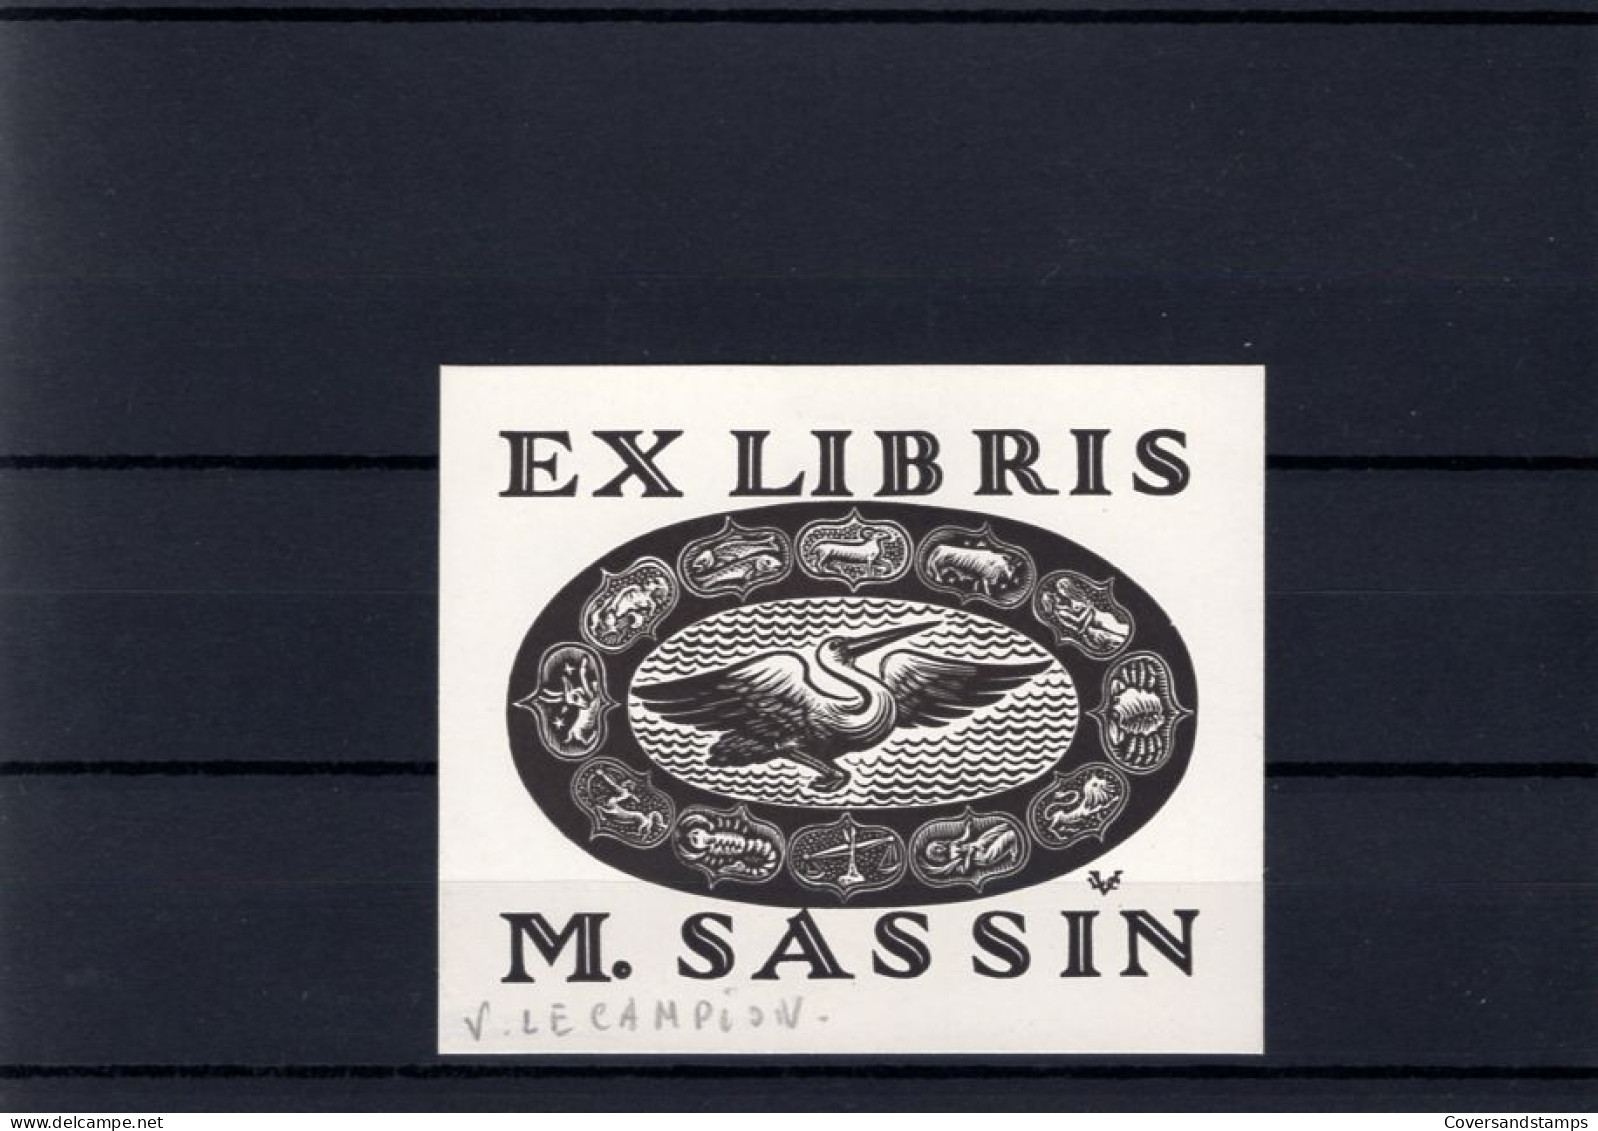 Ex-Libris : V. Le Campion - M. Sassin - Exlibris